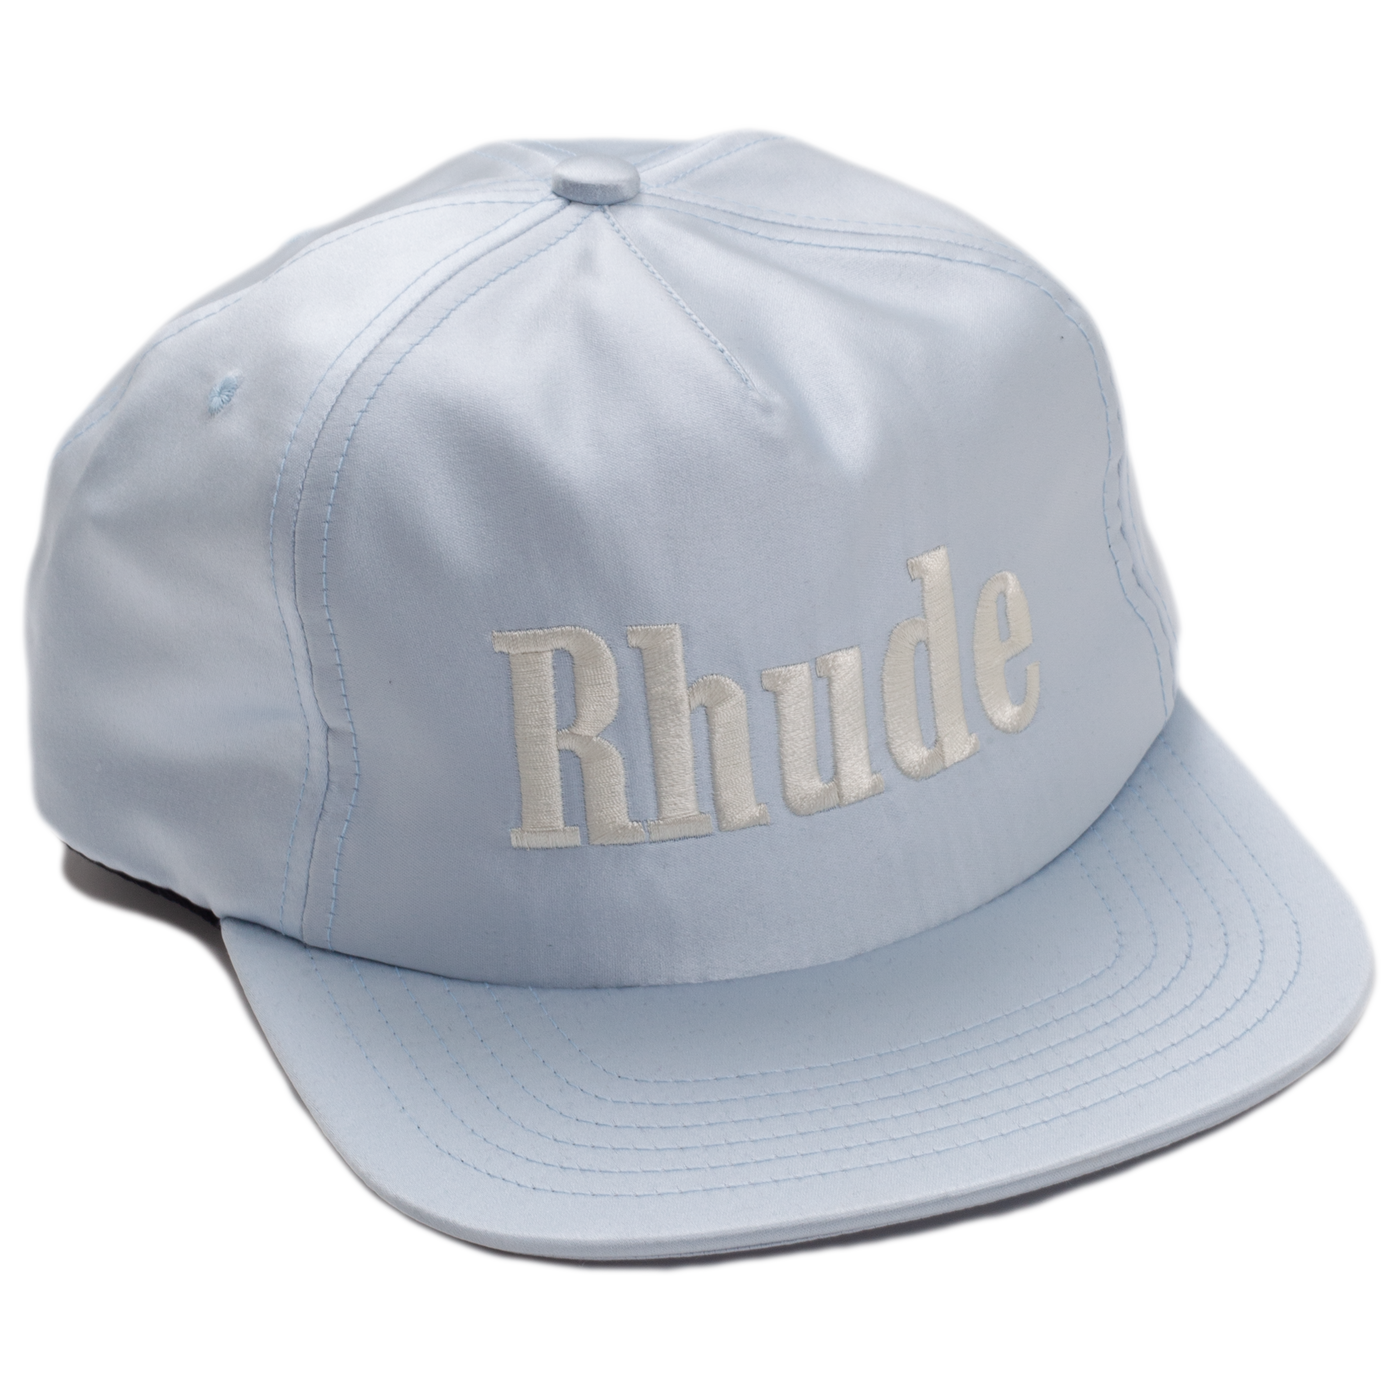 Rhude Sport Logo Hat